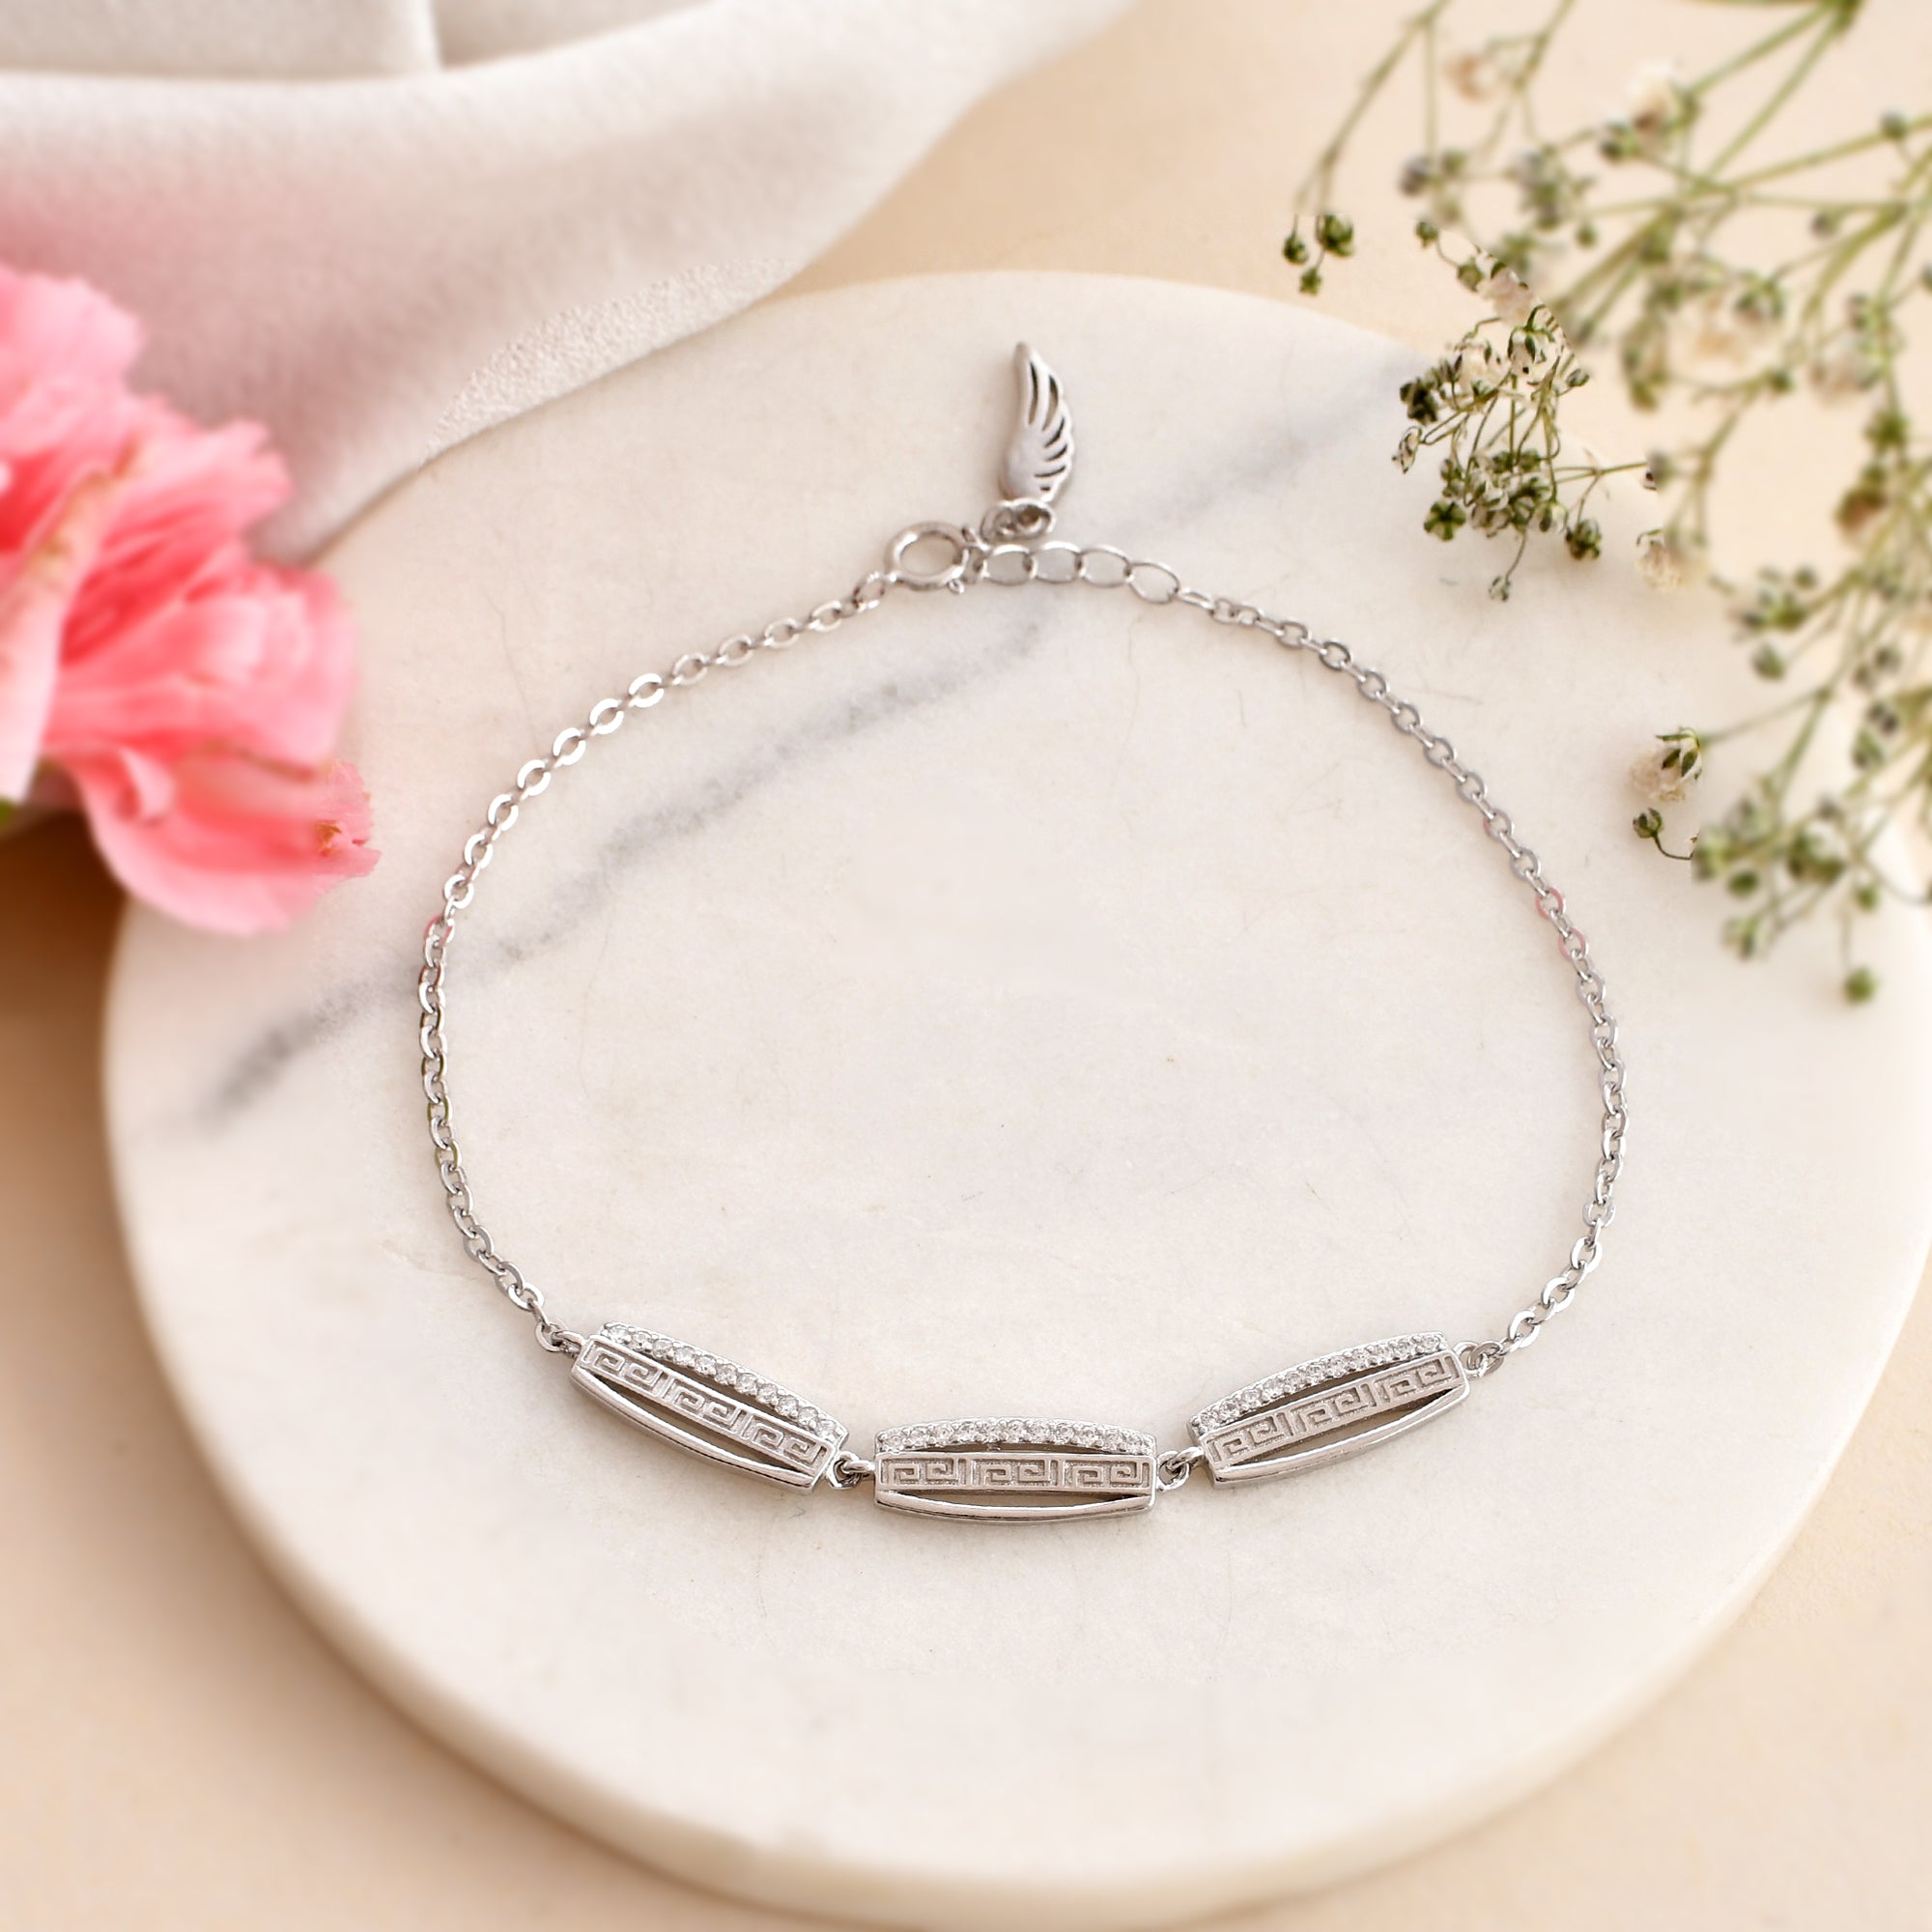 Crystal Bracelet for Girls - Anniversary Gift - American Diamond Bracelet -  Ashley Bracelet by Blingvine